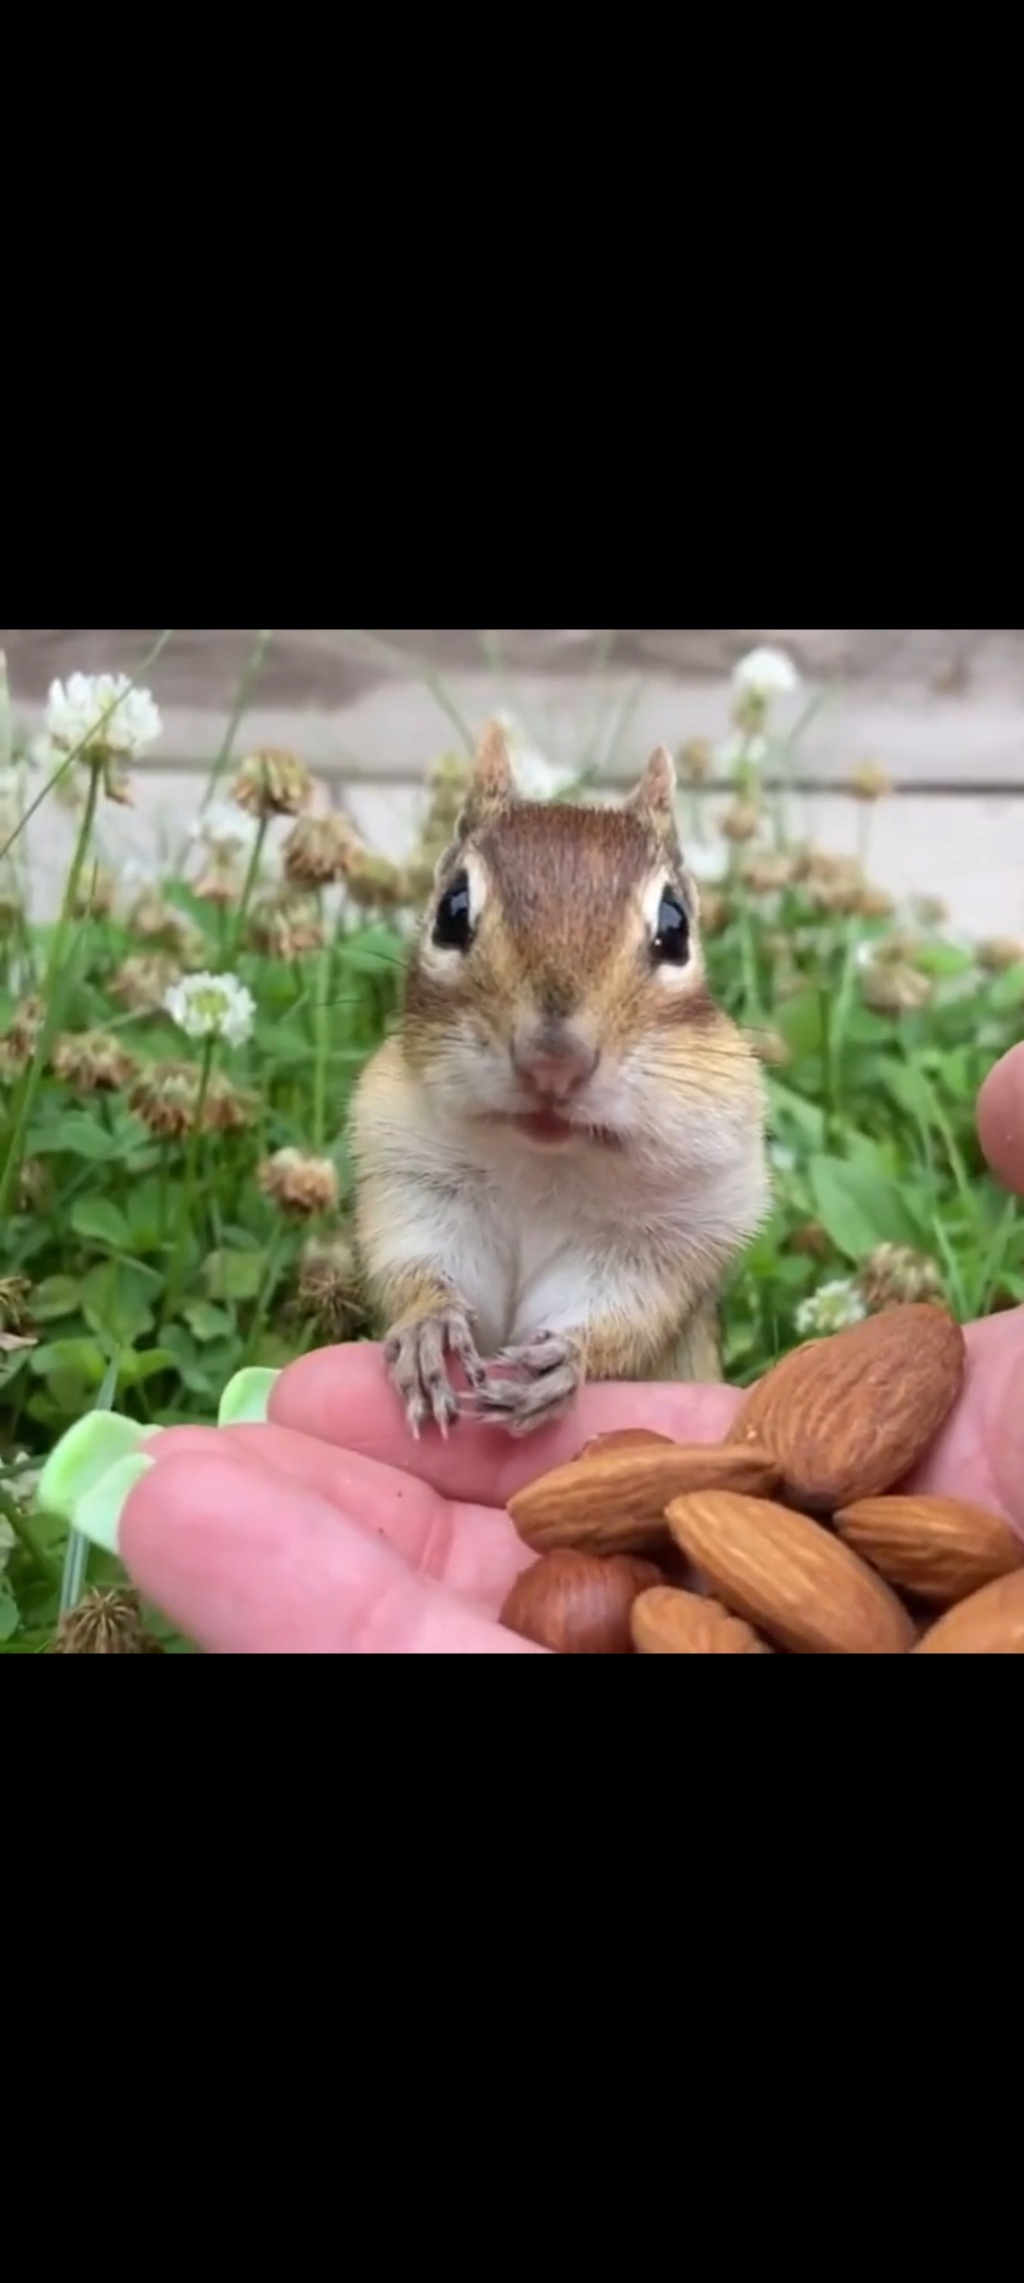 Gli scoiattoli non mangiano solo noccioline - Pagina 3 Scree121